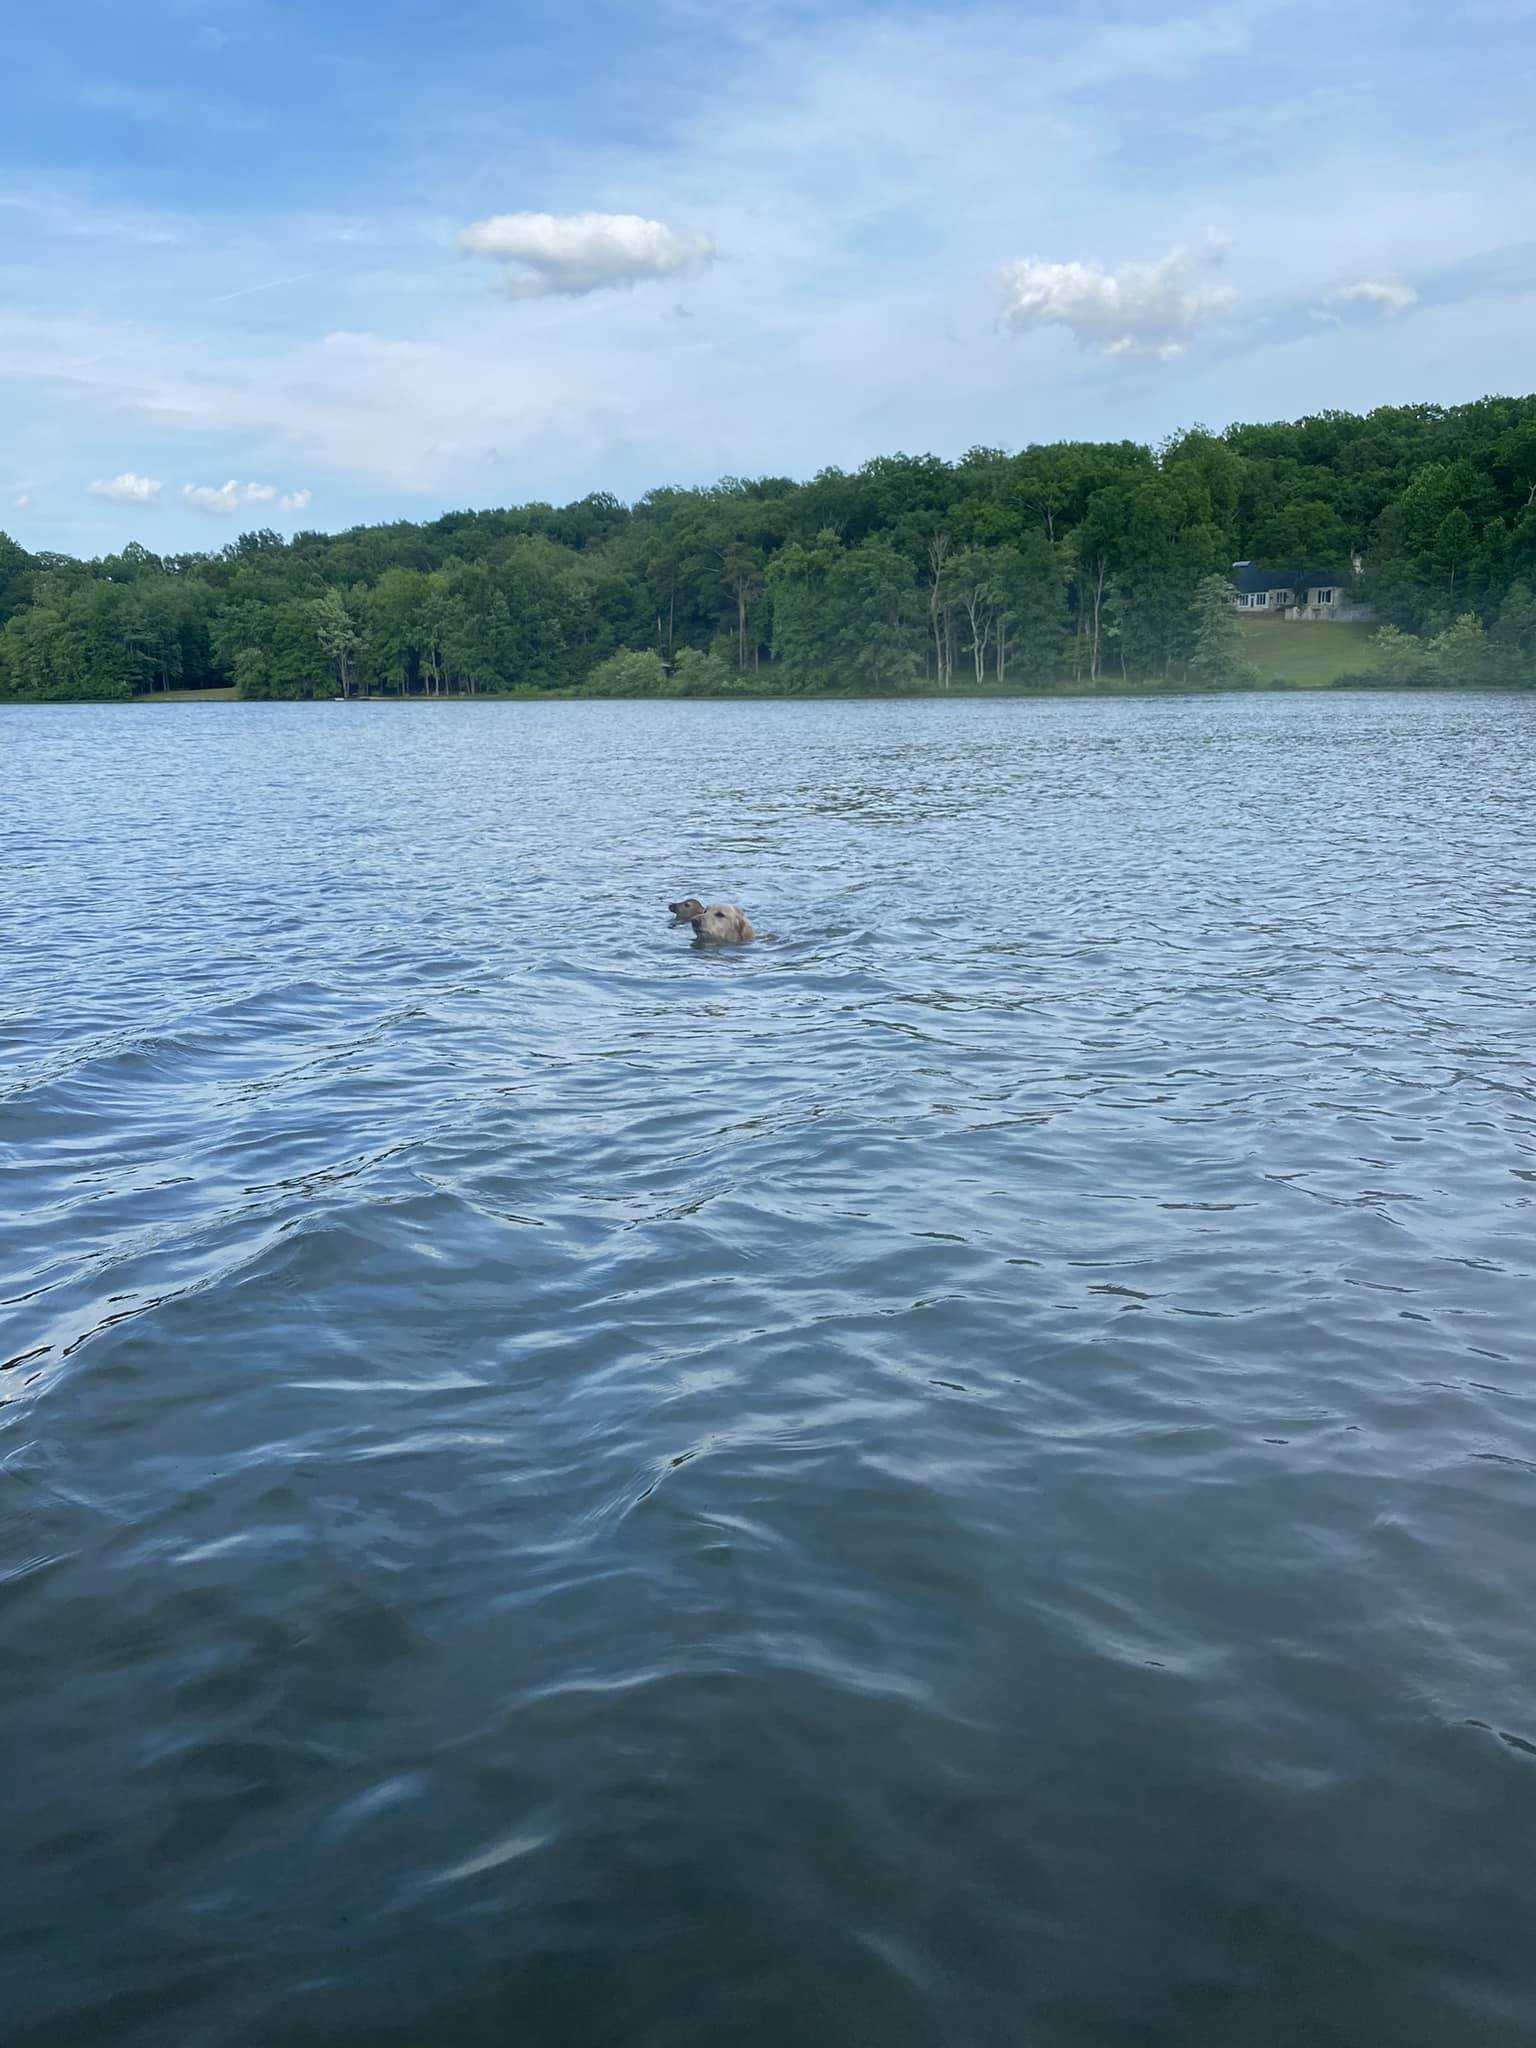 Bohaterski pies wskakuje do jeziora, aby uratować małego jelenia – dzięki temu zyskuje nowego przyjaciela